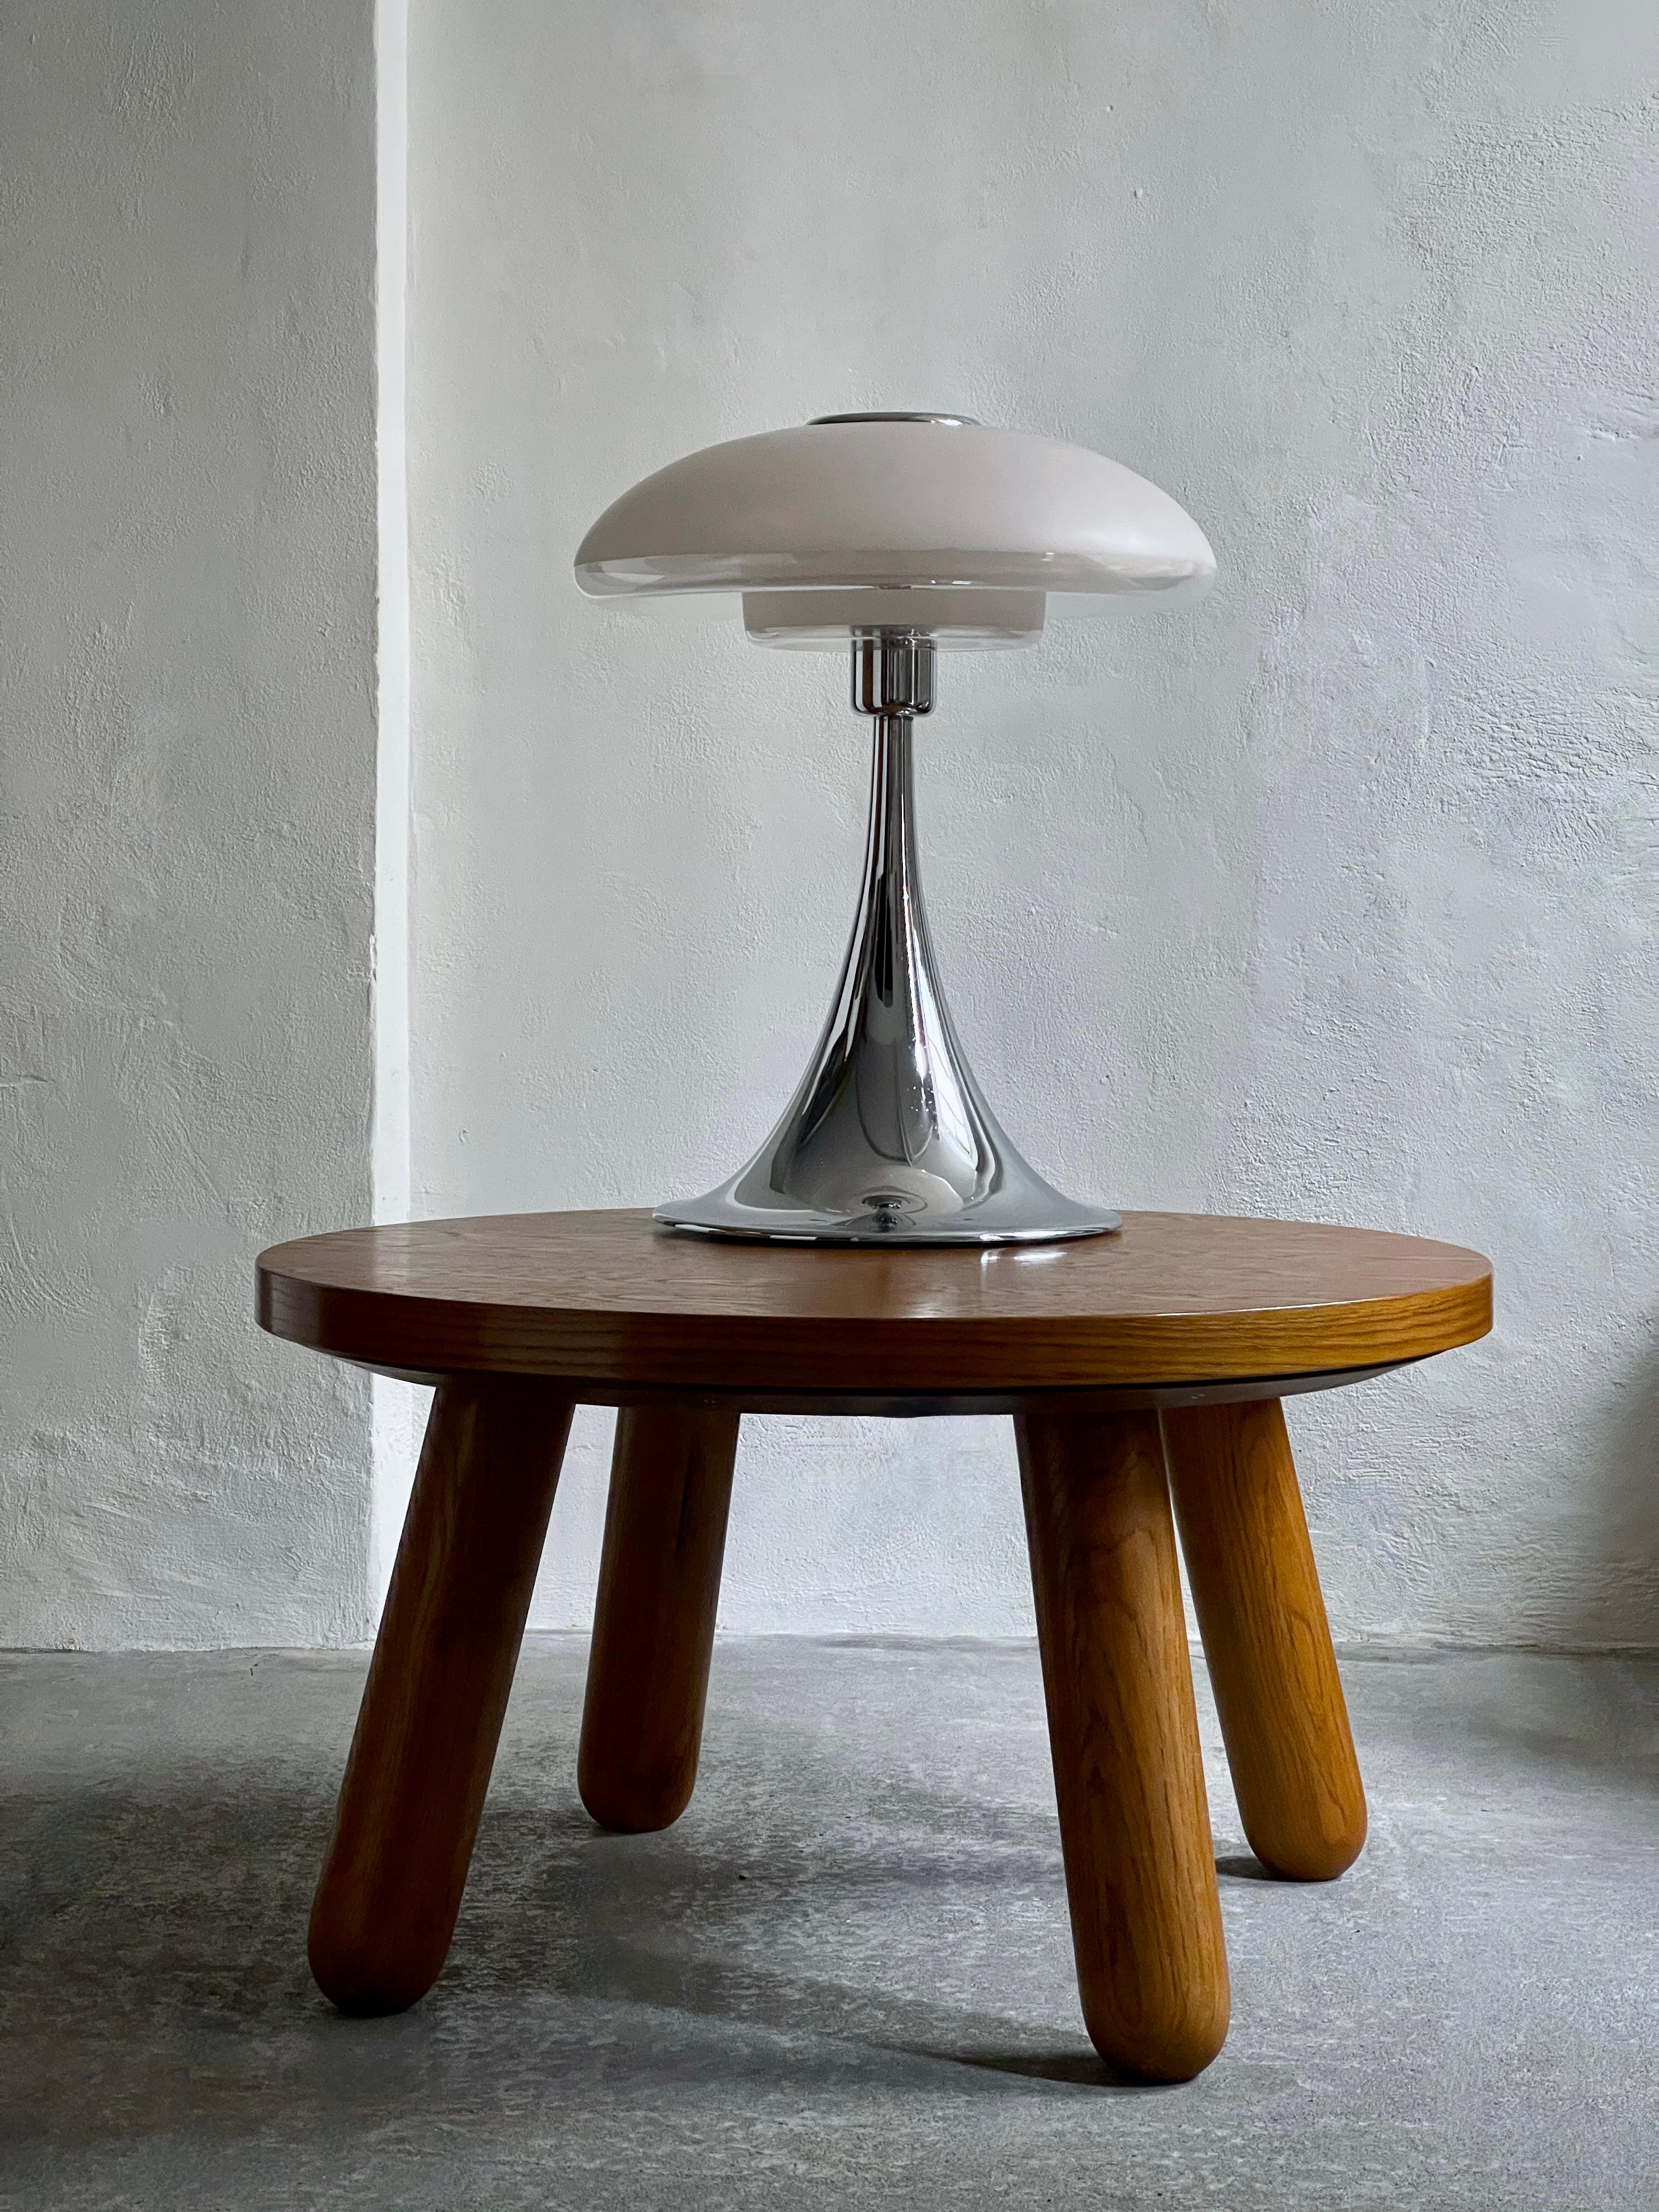 La rare et grande lampe de table VP Europa de Verner Panton, datant des années 1970, est un élément de l'histoire du design qui marie harmonieusement la forme et la fonction. Son abat-jour en verre opalin, sa base chromée et son esthétique de l'ère